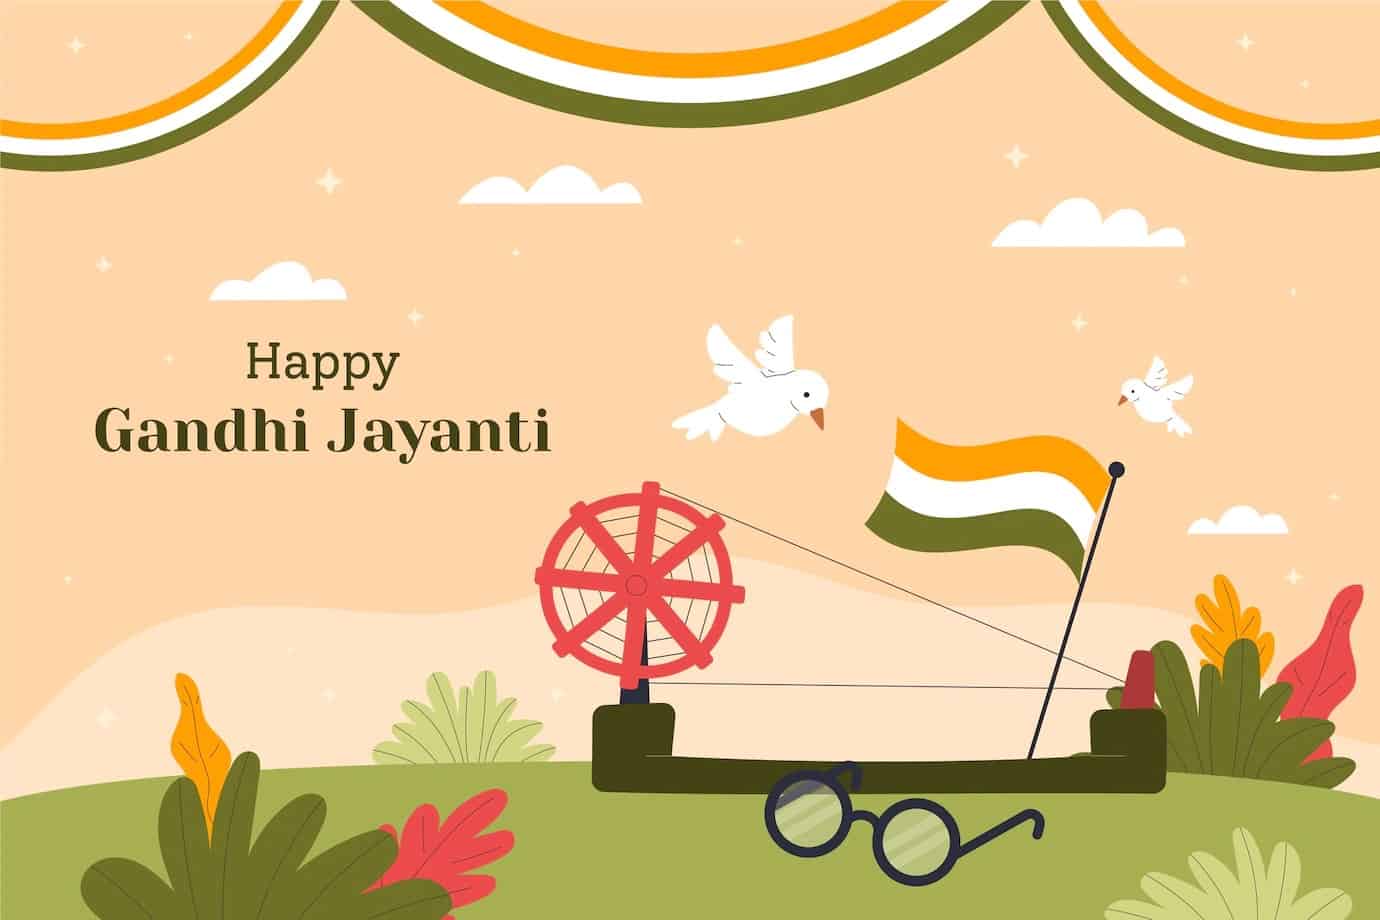 Happy Gandhi Jayanti Images